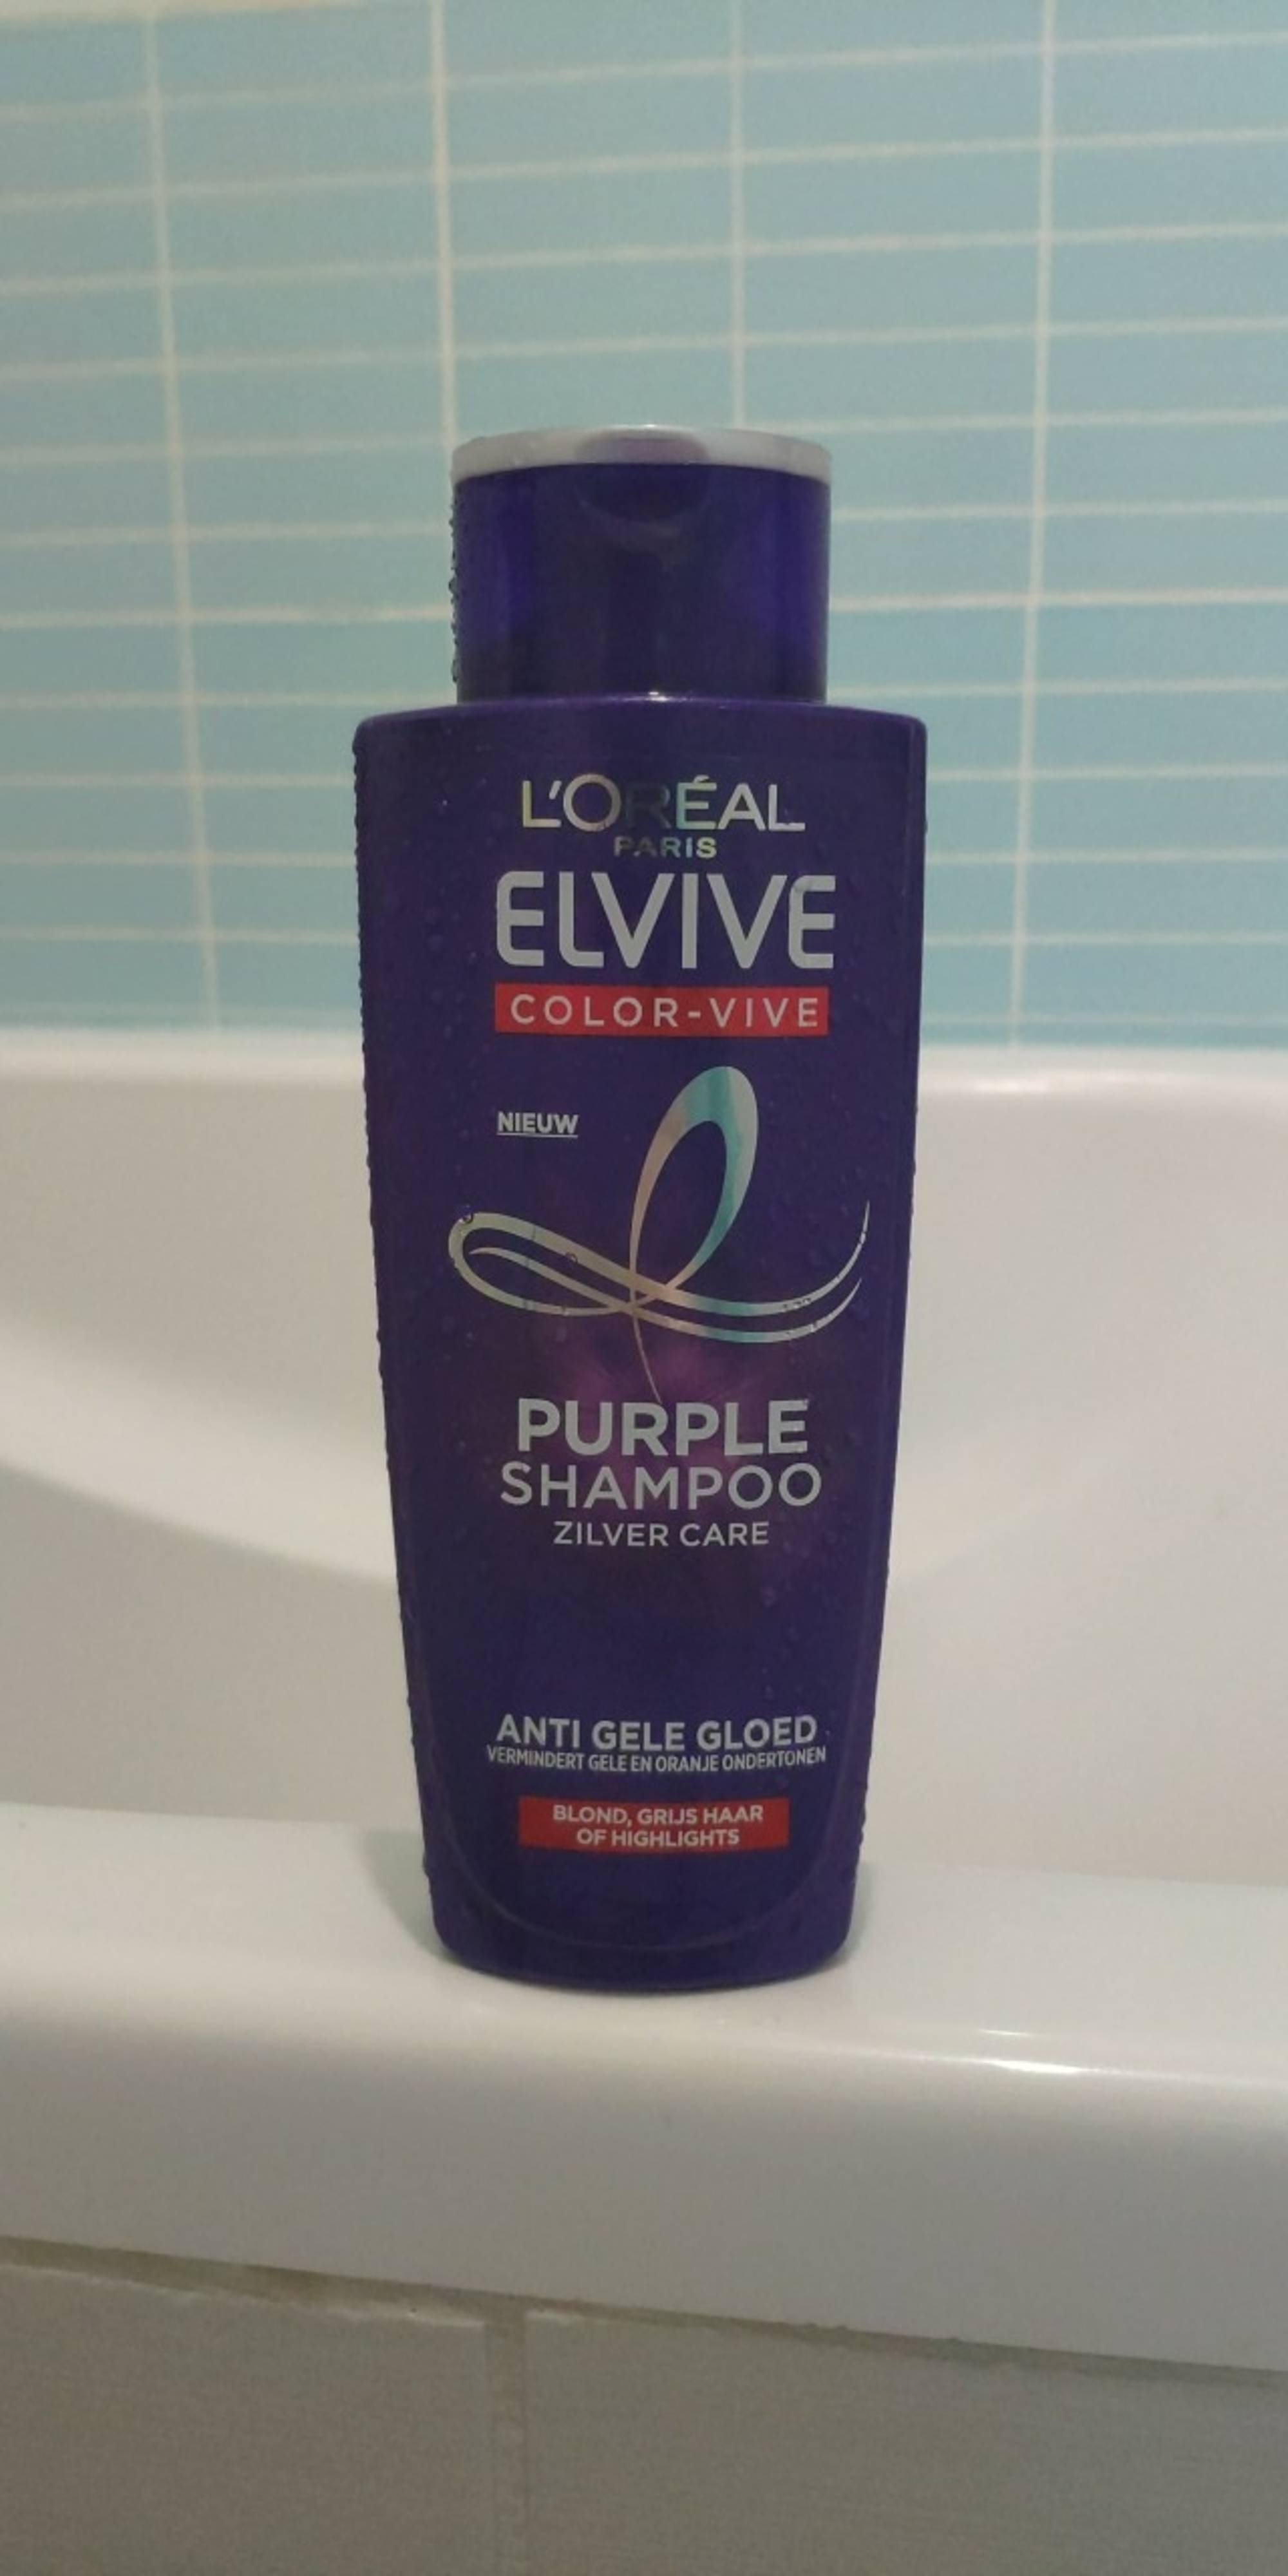 L'ORÉAL PARIS - Elvive Color-vive - Purple shampoo